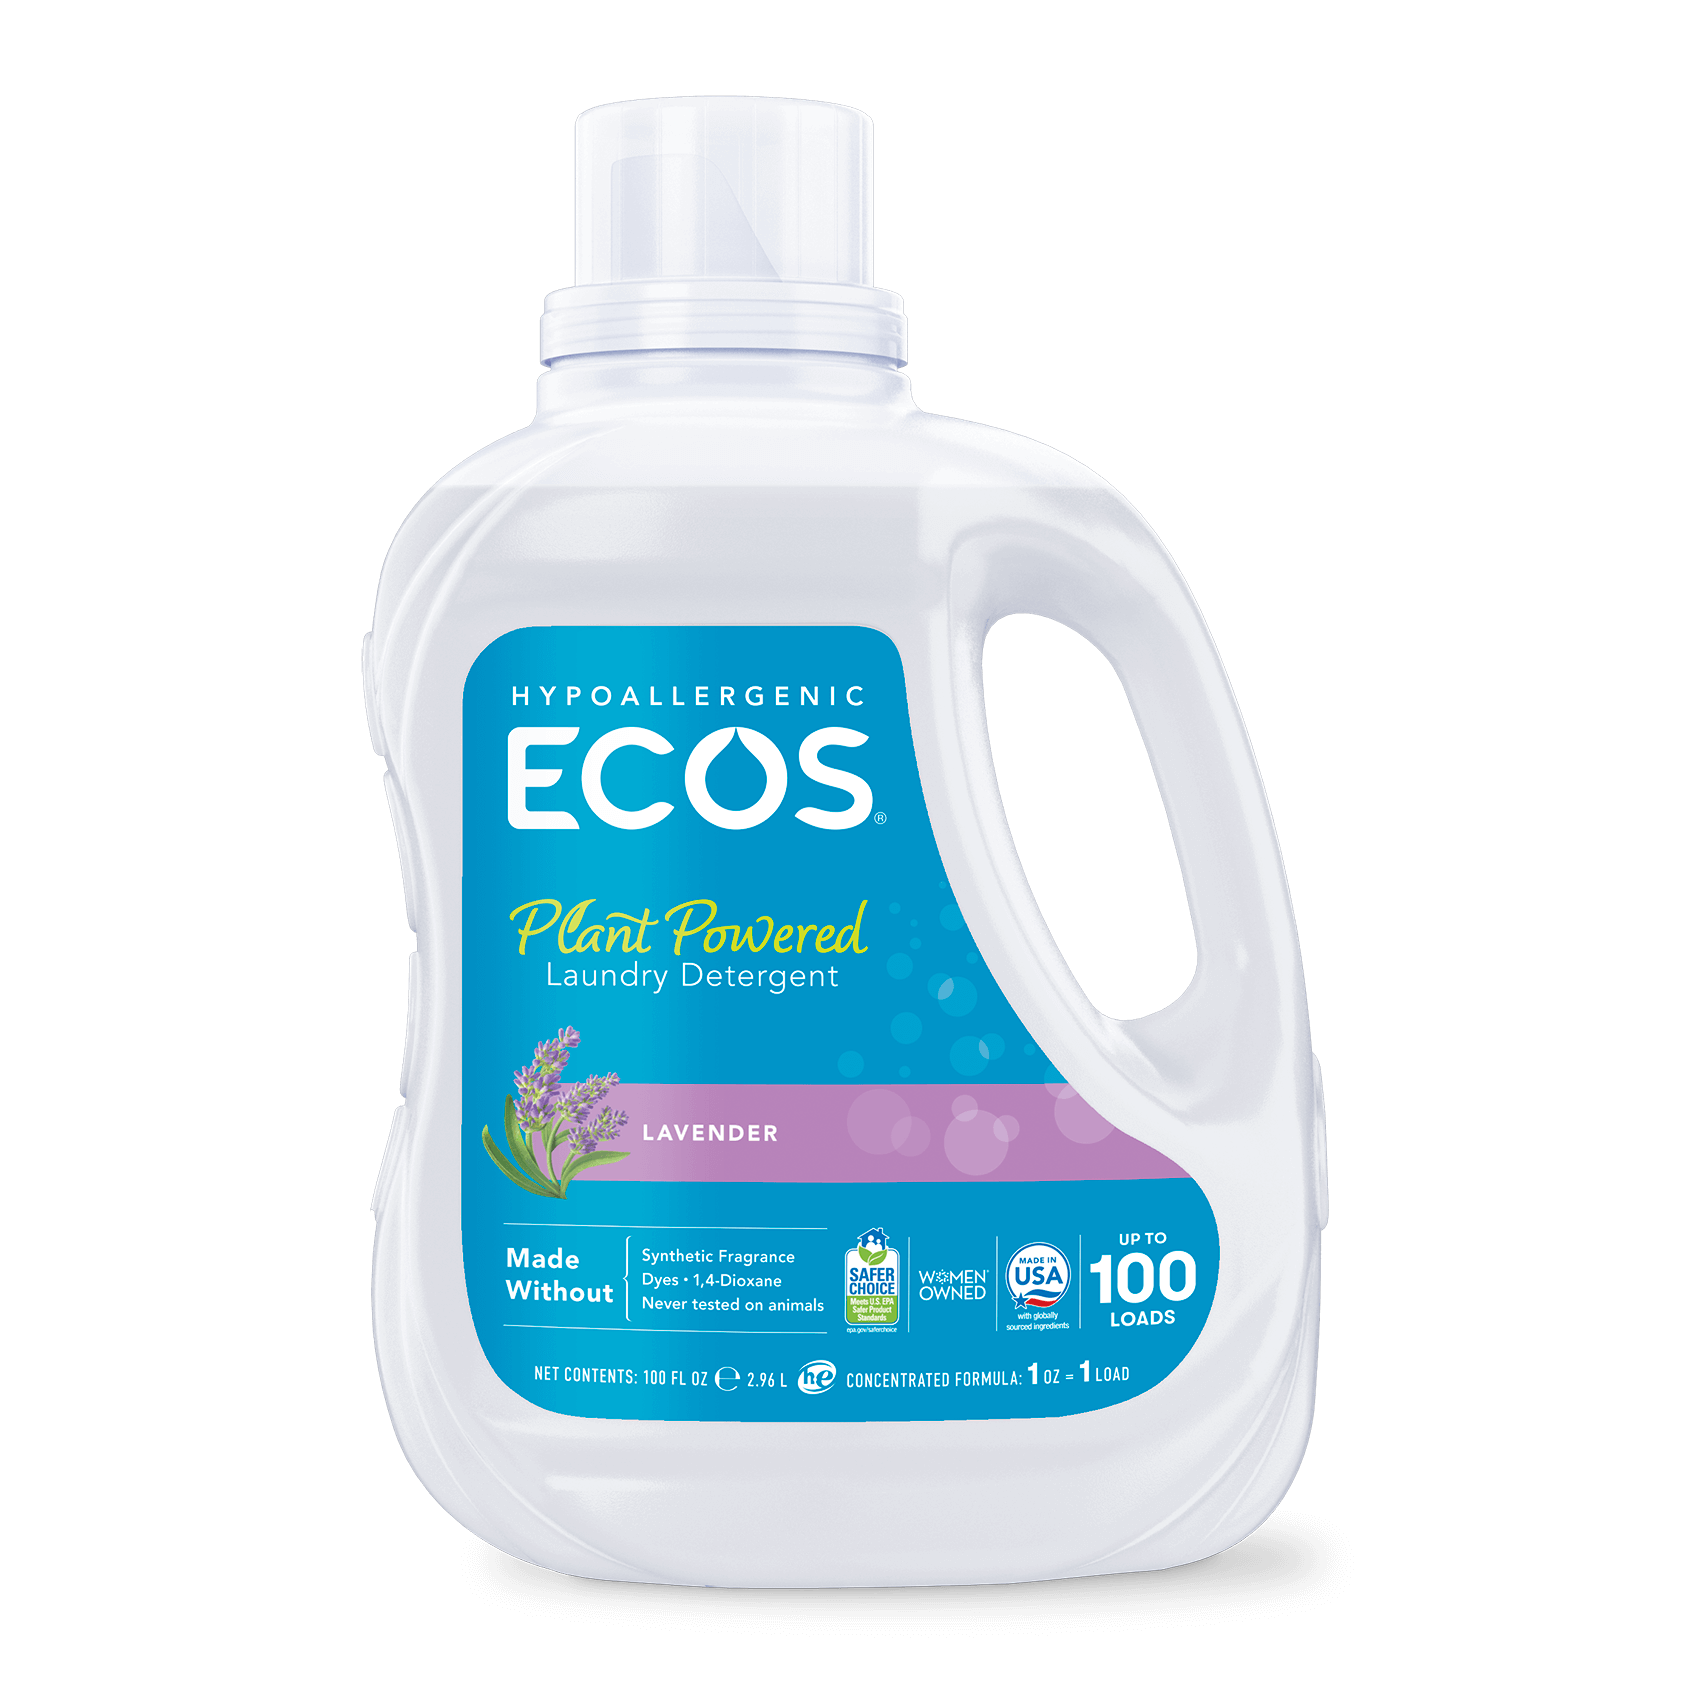 Detergente hipoalergénico para bebé biodegradable, ecológico